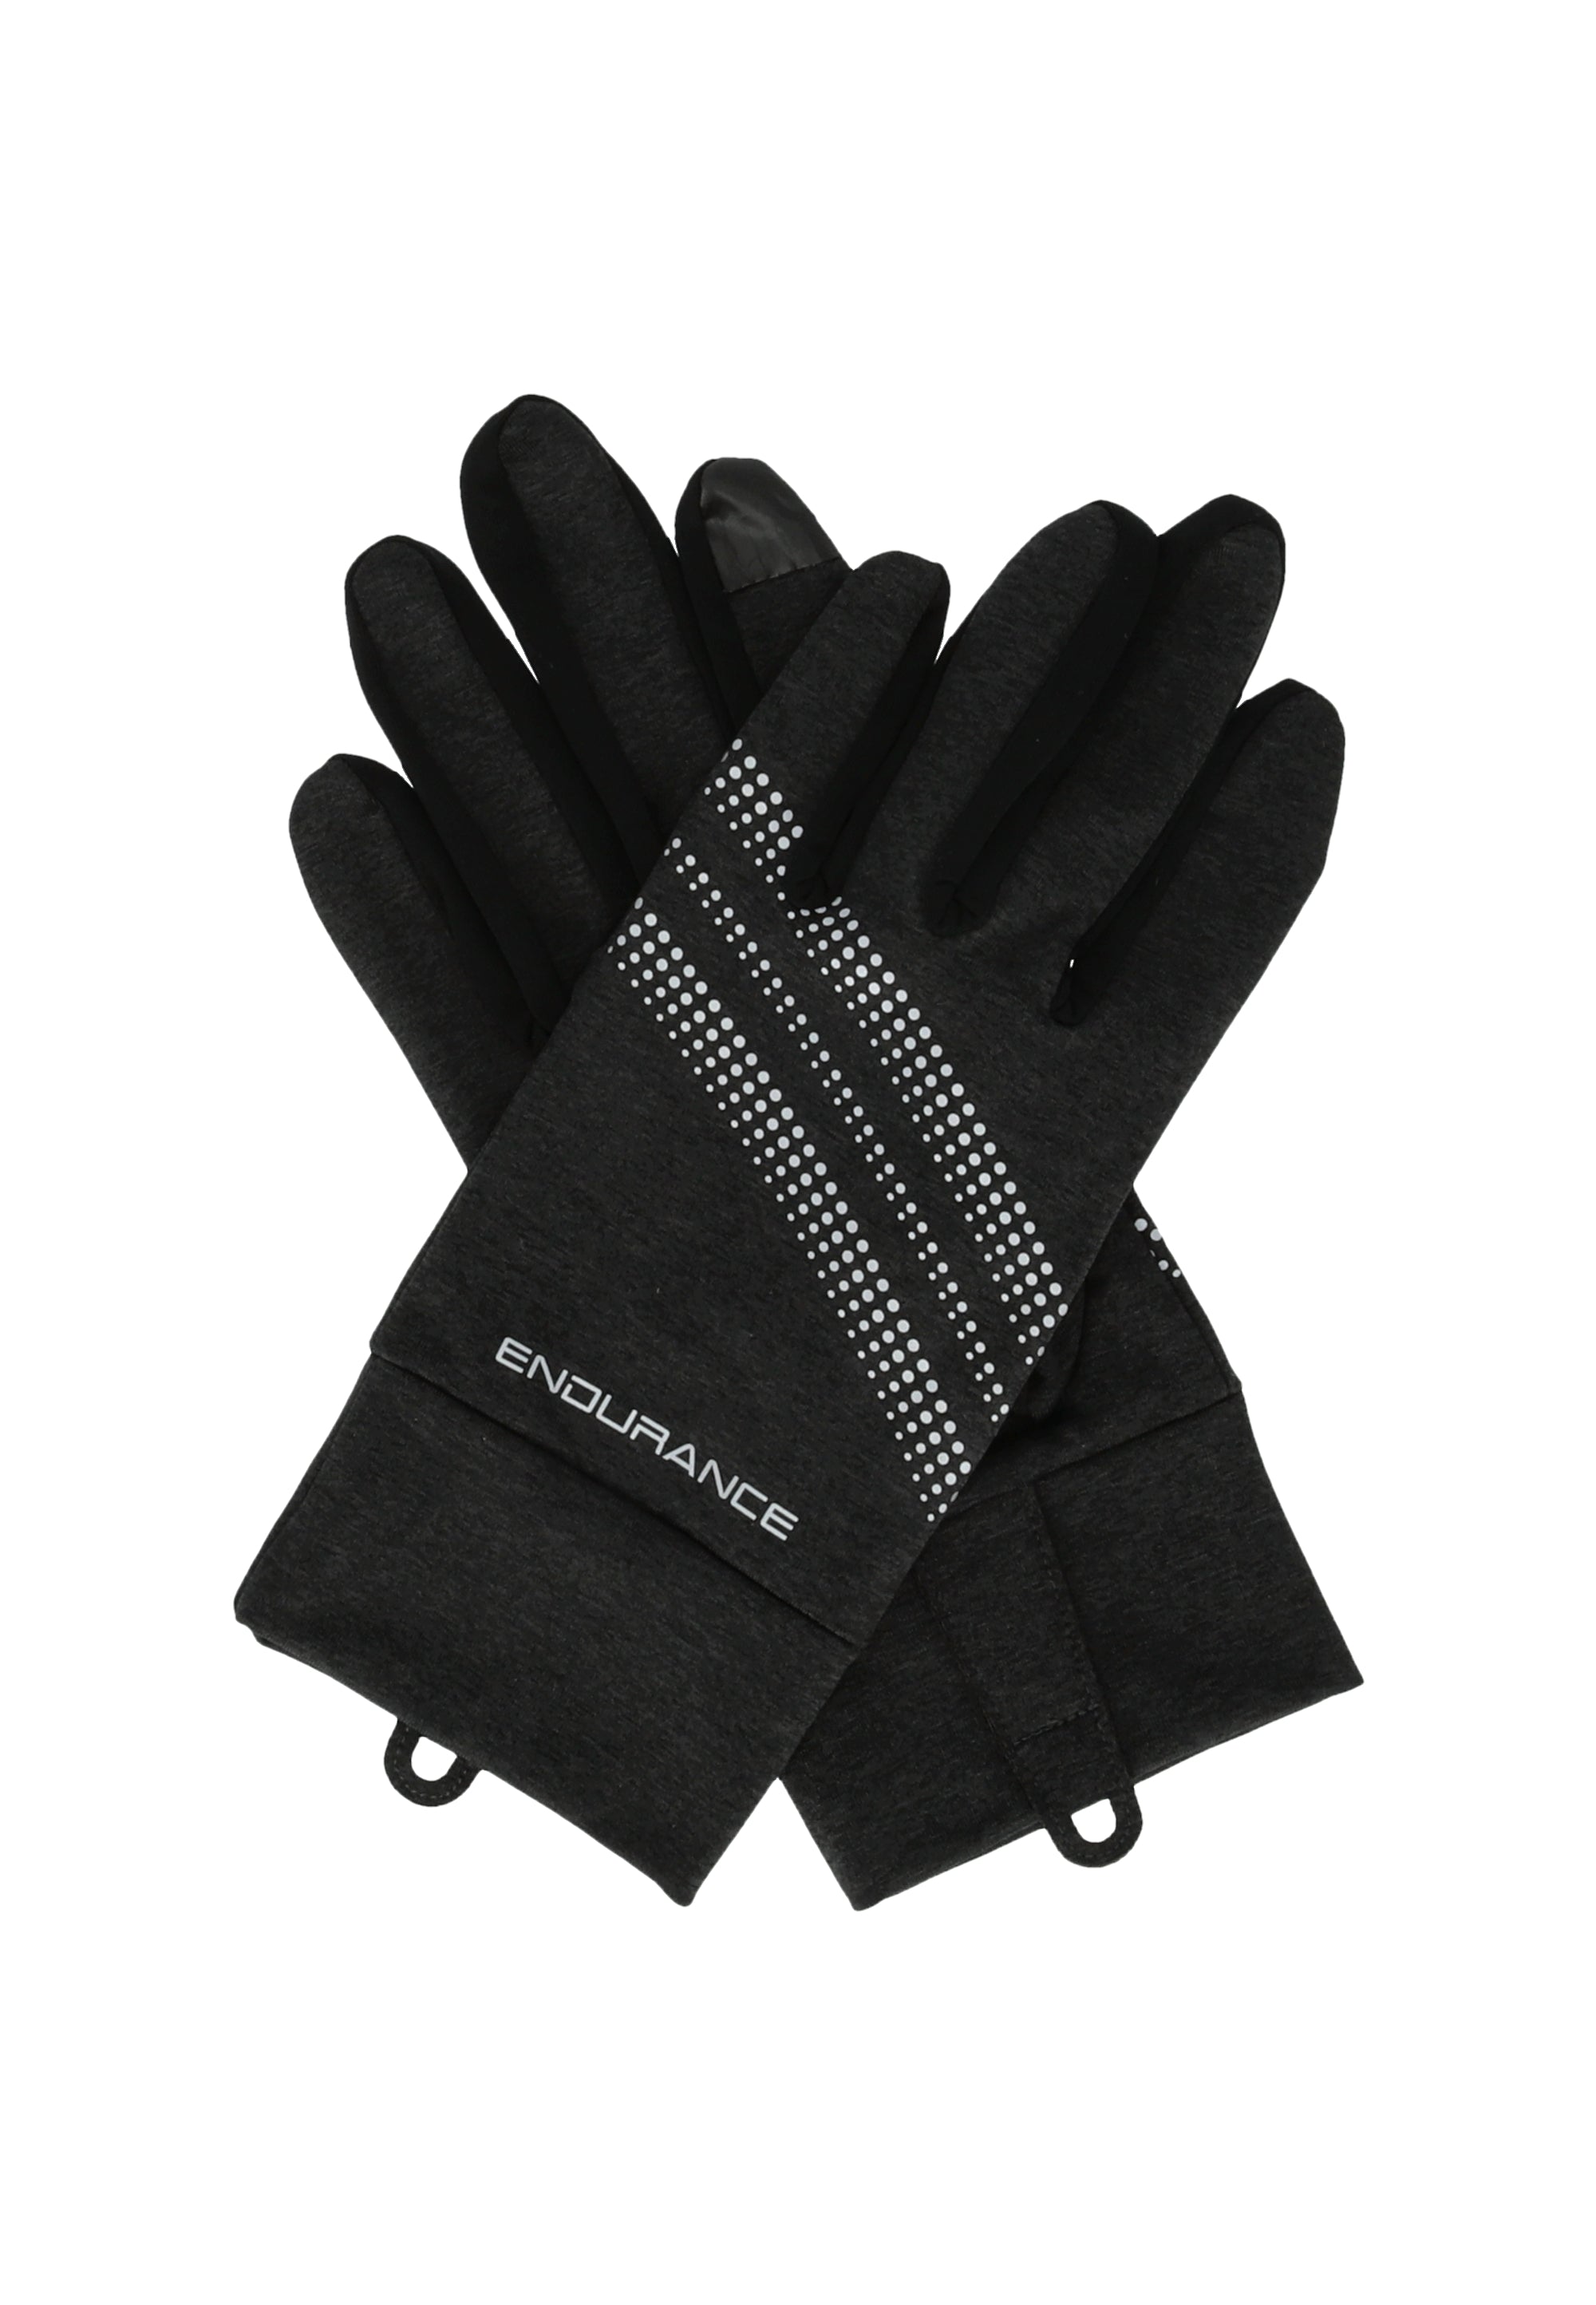 New South Wales Melange Gloves